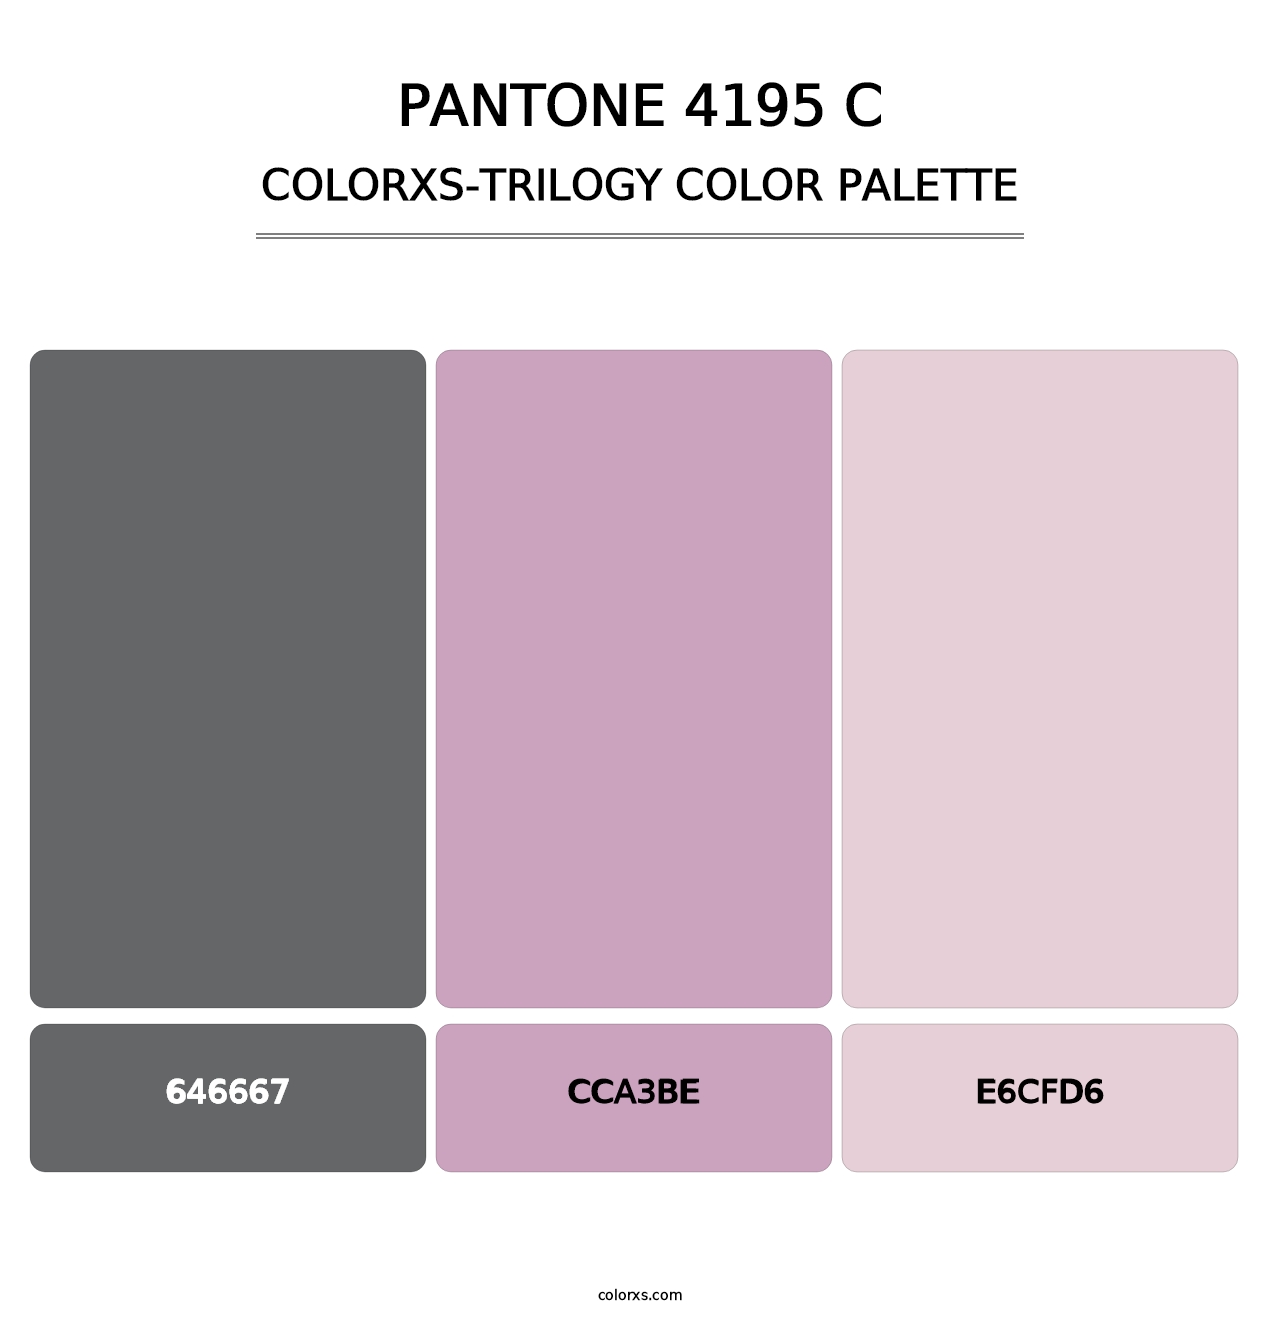 PANTONE 4195 C - Colorxs Trilogy Palette